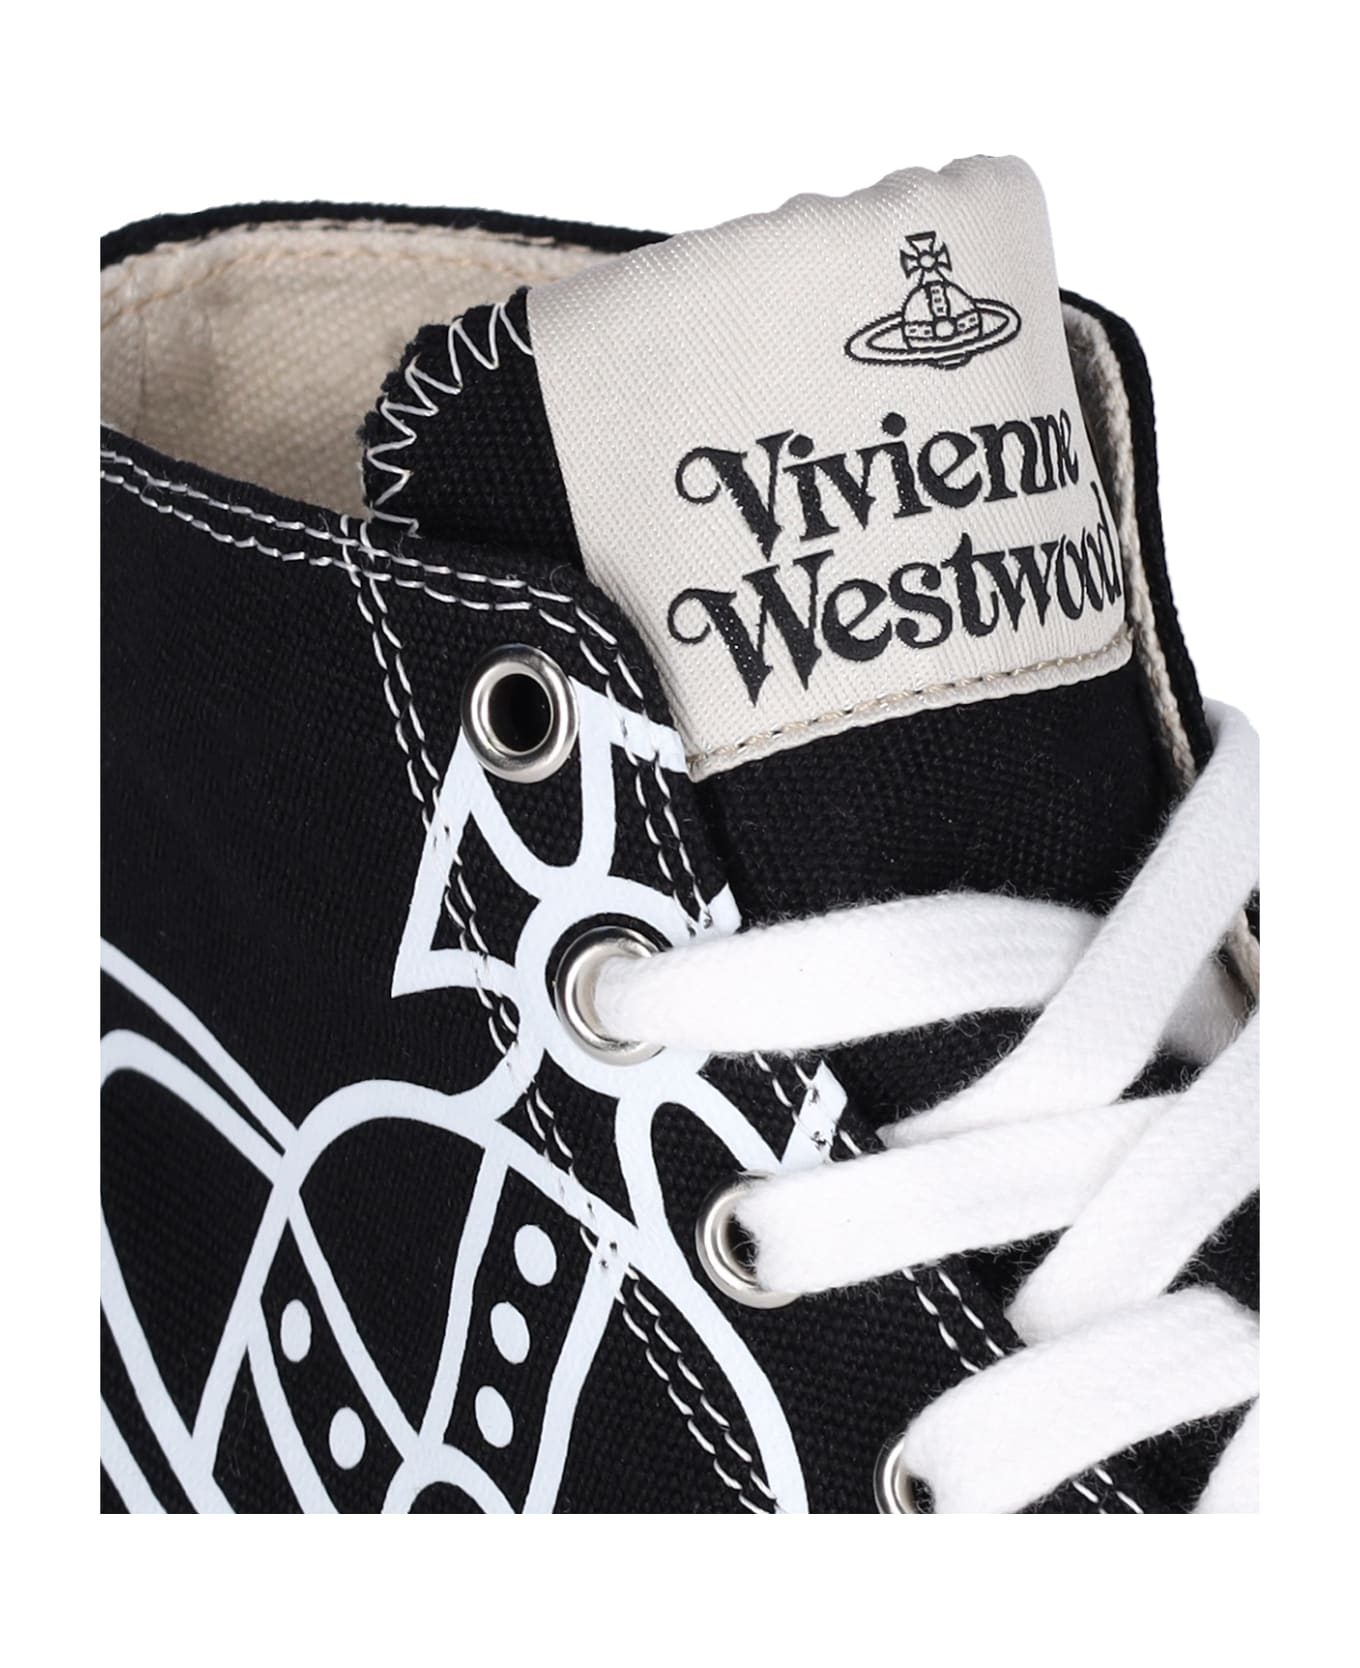 Vivienne Westwood "plimsoll High" Sneakers - Black  